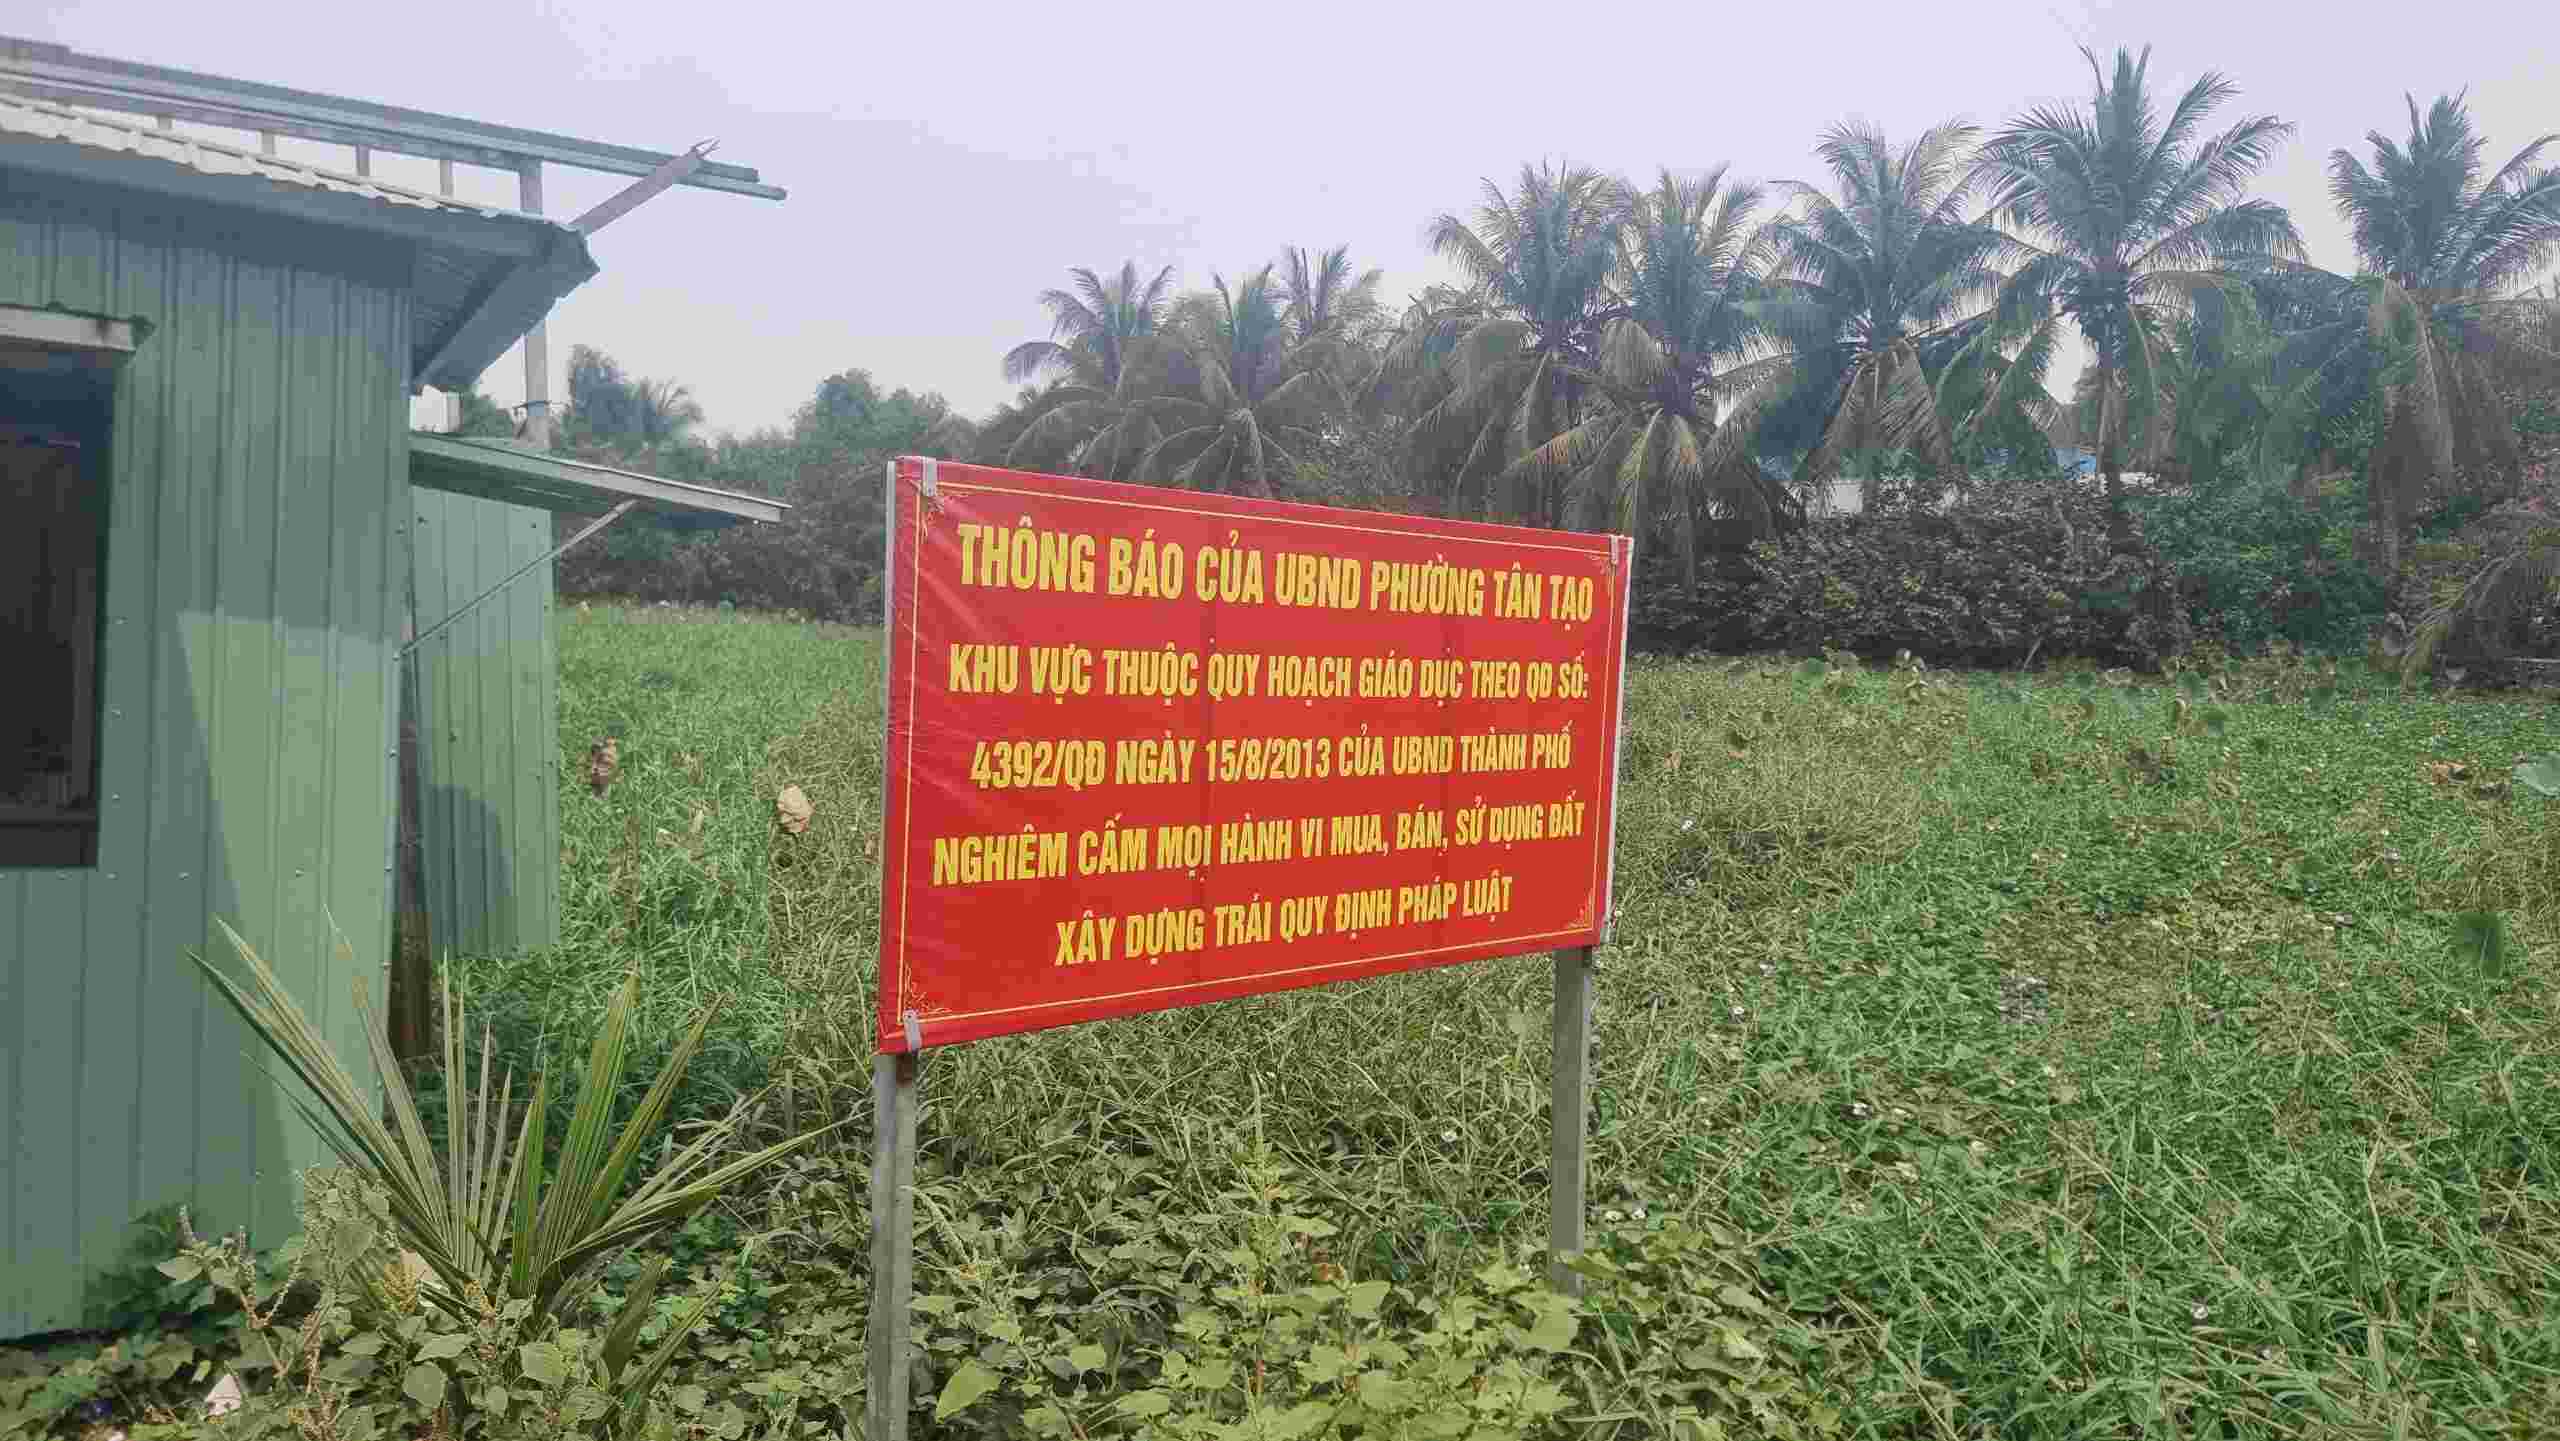 UBND phường Tân Tạo căng biển cảnh báo để ngăn ngừa việc mua bán và xây dựng trái phép tại khu vực đất được quy hoạch giáo dục. Ảnh:  Ngọc Duy